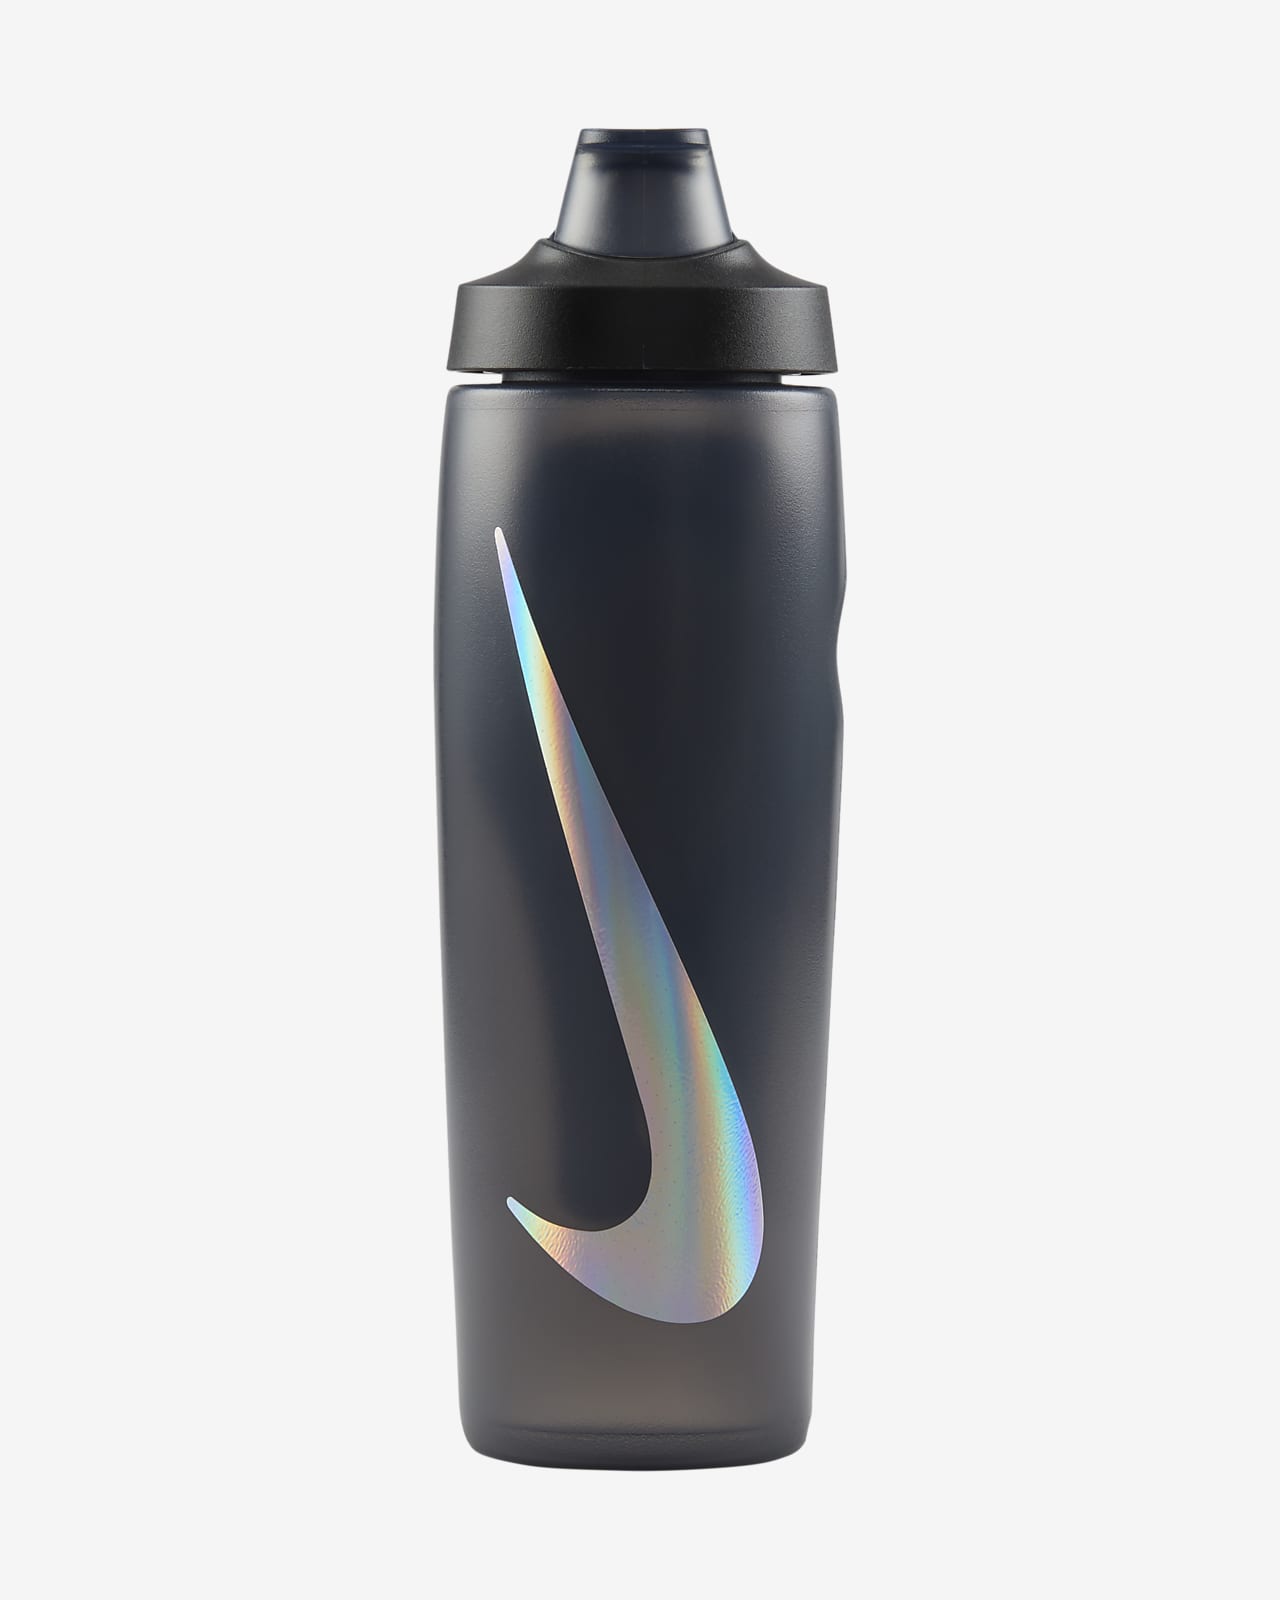 Nike Refuel Locking-Lid Water Bottle (710ml approx.)